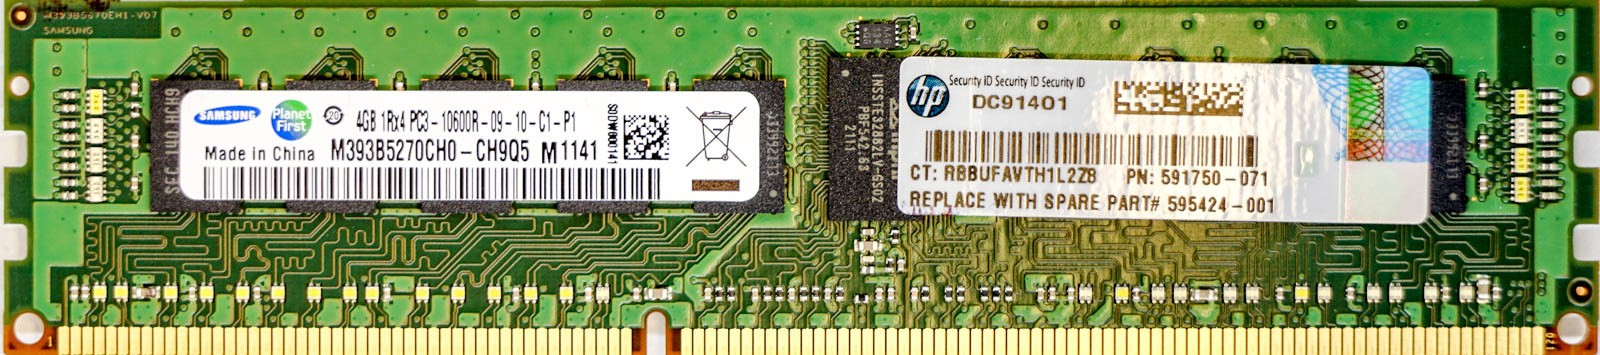 HP (591750-071) - 4GB PC3-10600R (DDR3-1333Mhz, 1RX4)